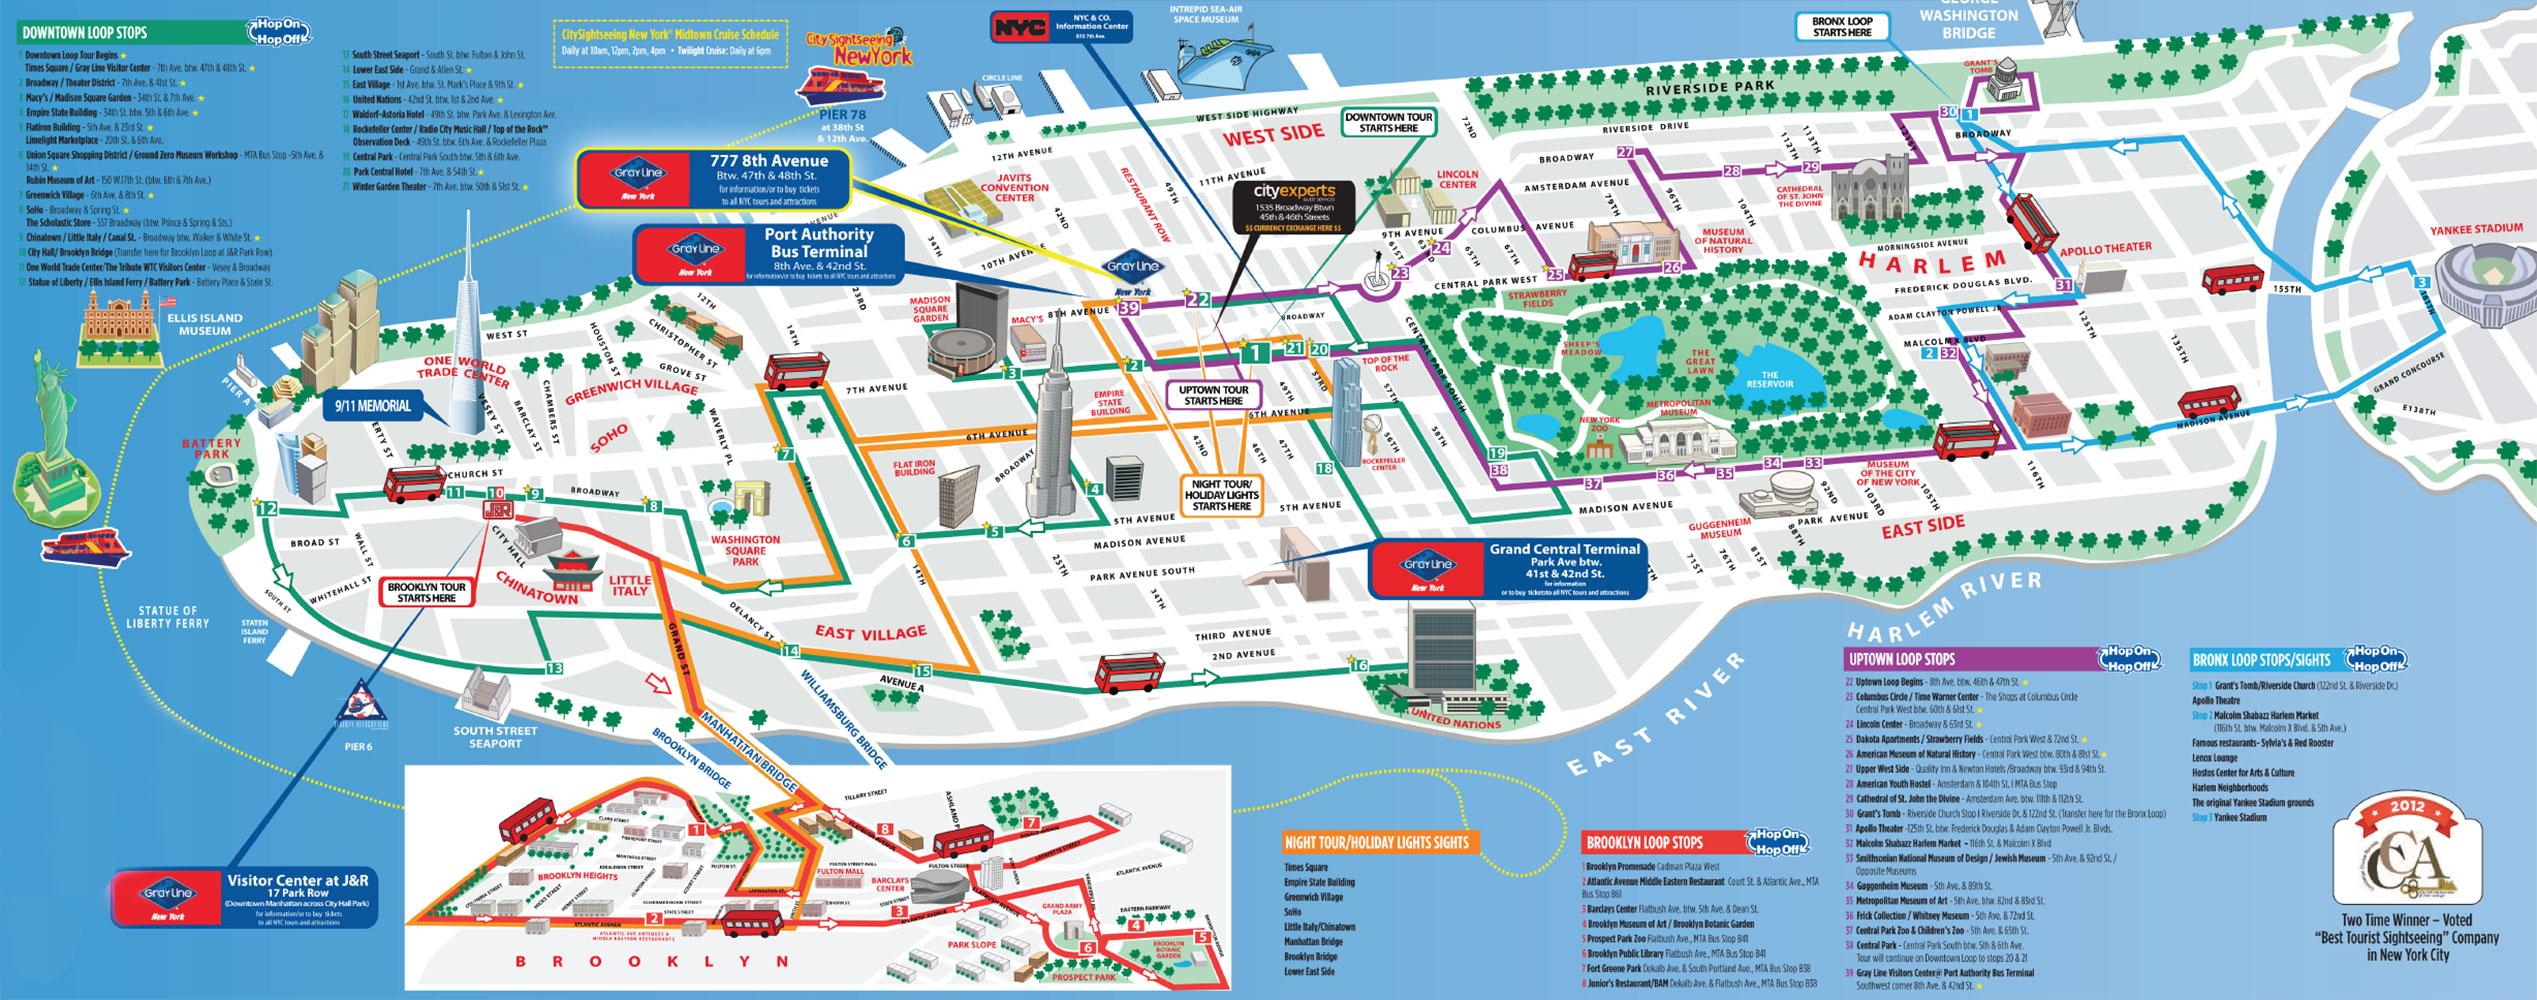 atlet En skønne dag privat Map of Brooklyn Bus Tour: hop on hop off Bus Tours and Big Bus of Brooklyn